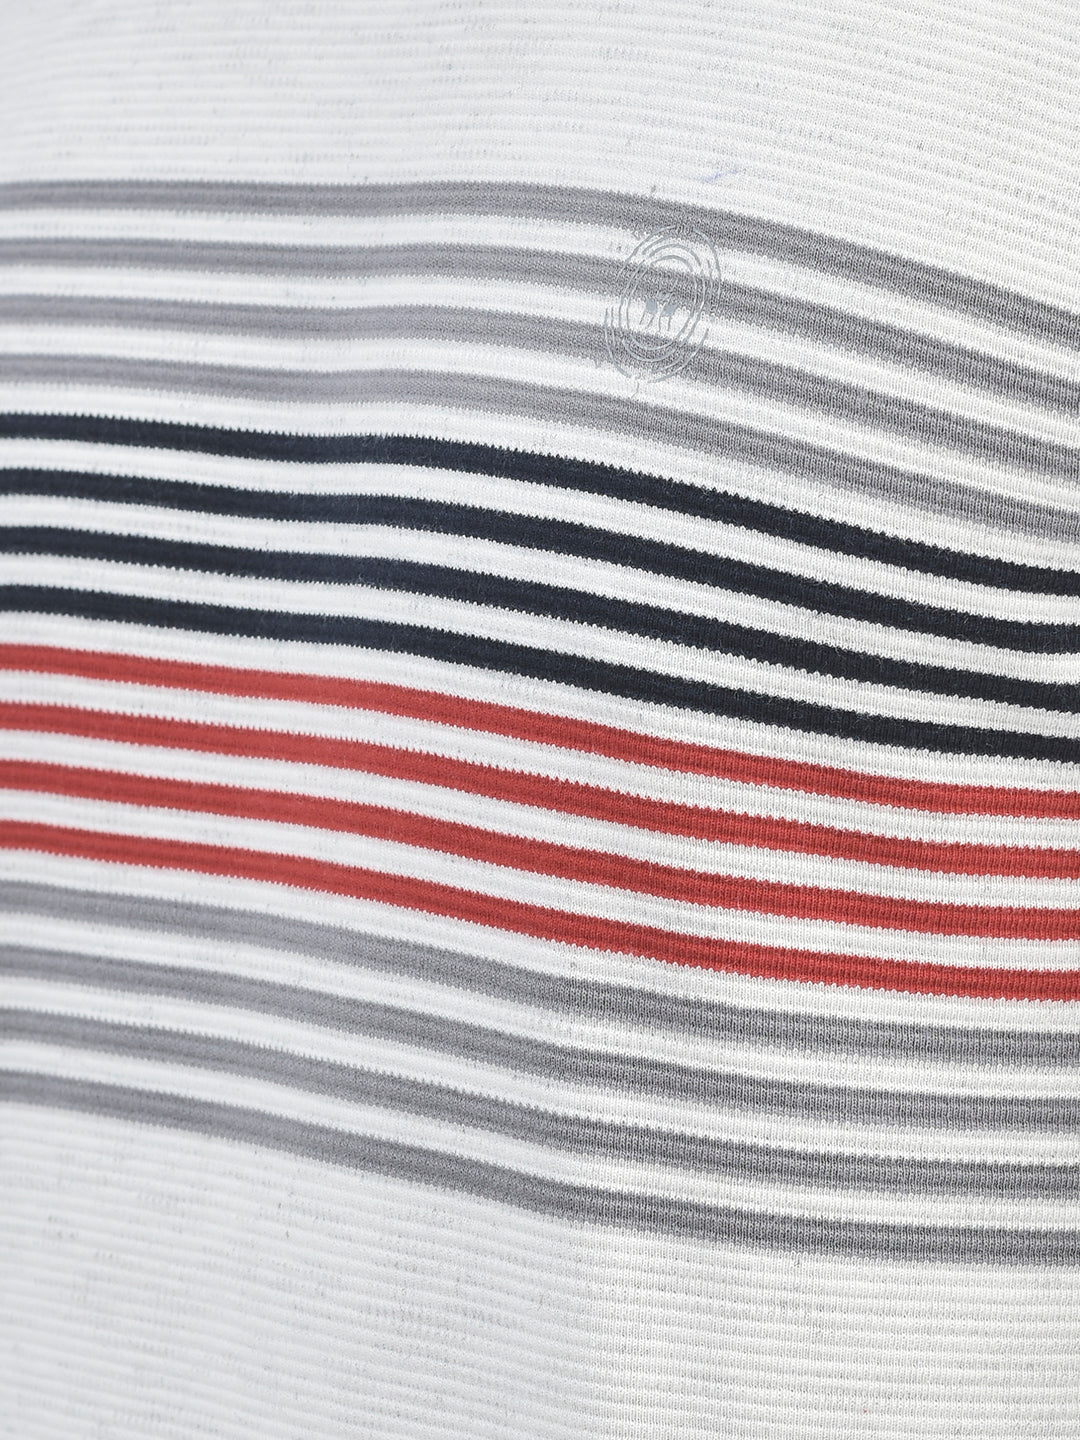 White Striped Round Neck Sweatshirt-Men Sweatshirts-Crimsoune Club